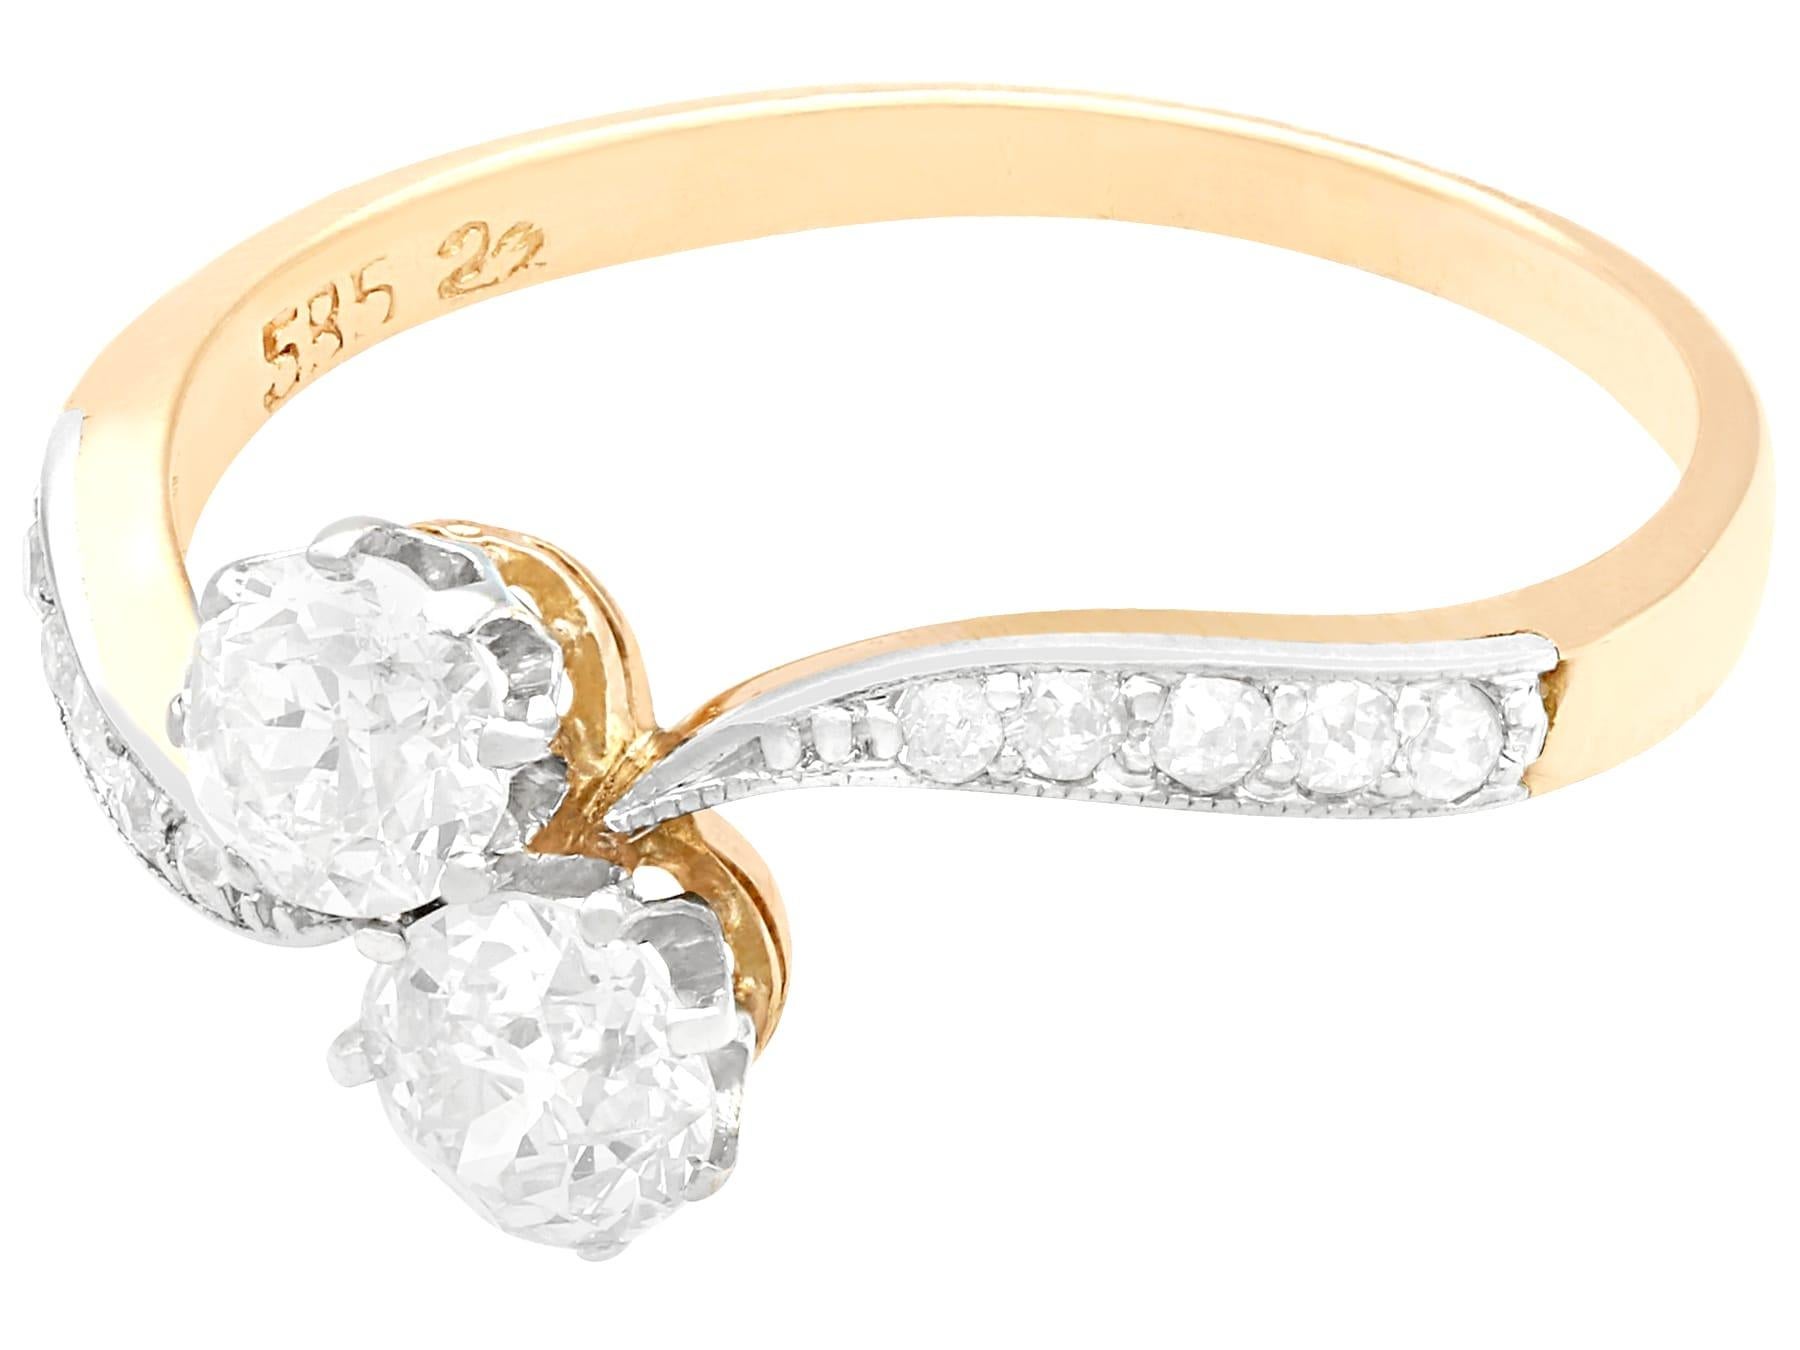 Ein feiner und beeindruckender antiker Ring aus 0,97 Karat Diamanten und 14 Karat Gelbgold mit einer Platinfassung; Teil unserer vielfältigen Antikschmuck- und Nachlassschmuckkollektionen.

Dieser beeindruckende antike Diamantring ist aus 14 Karat